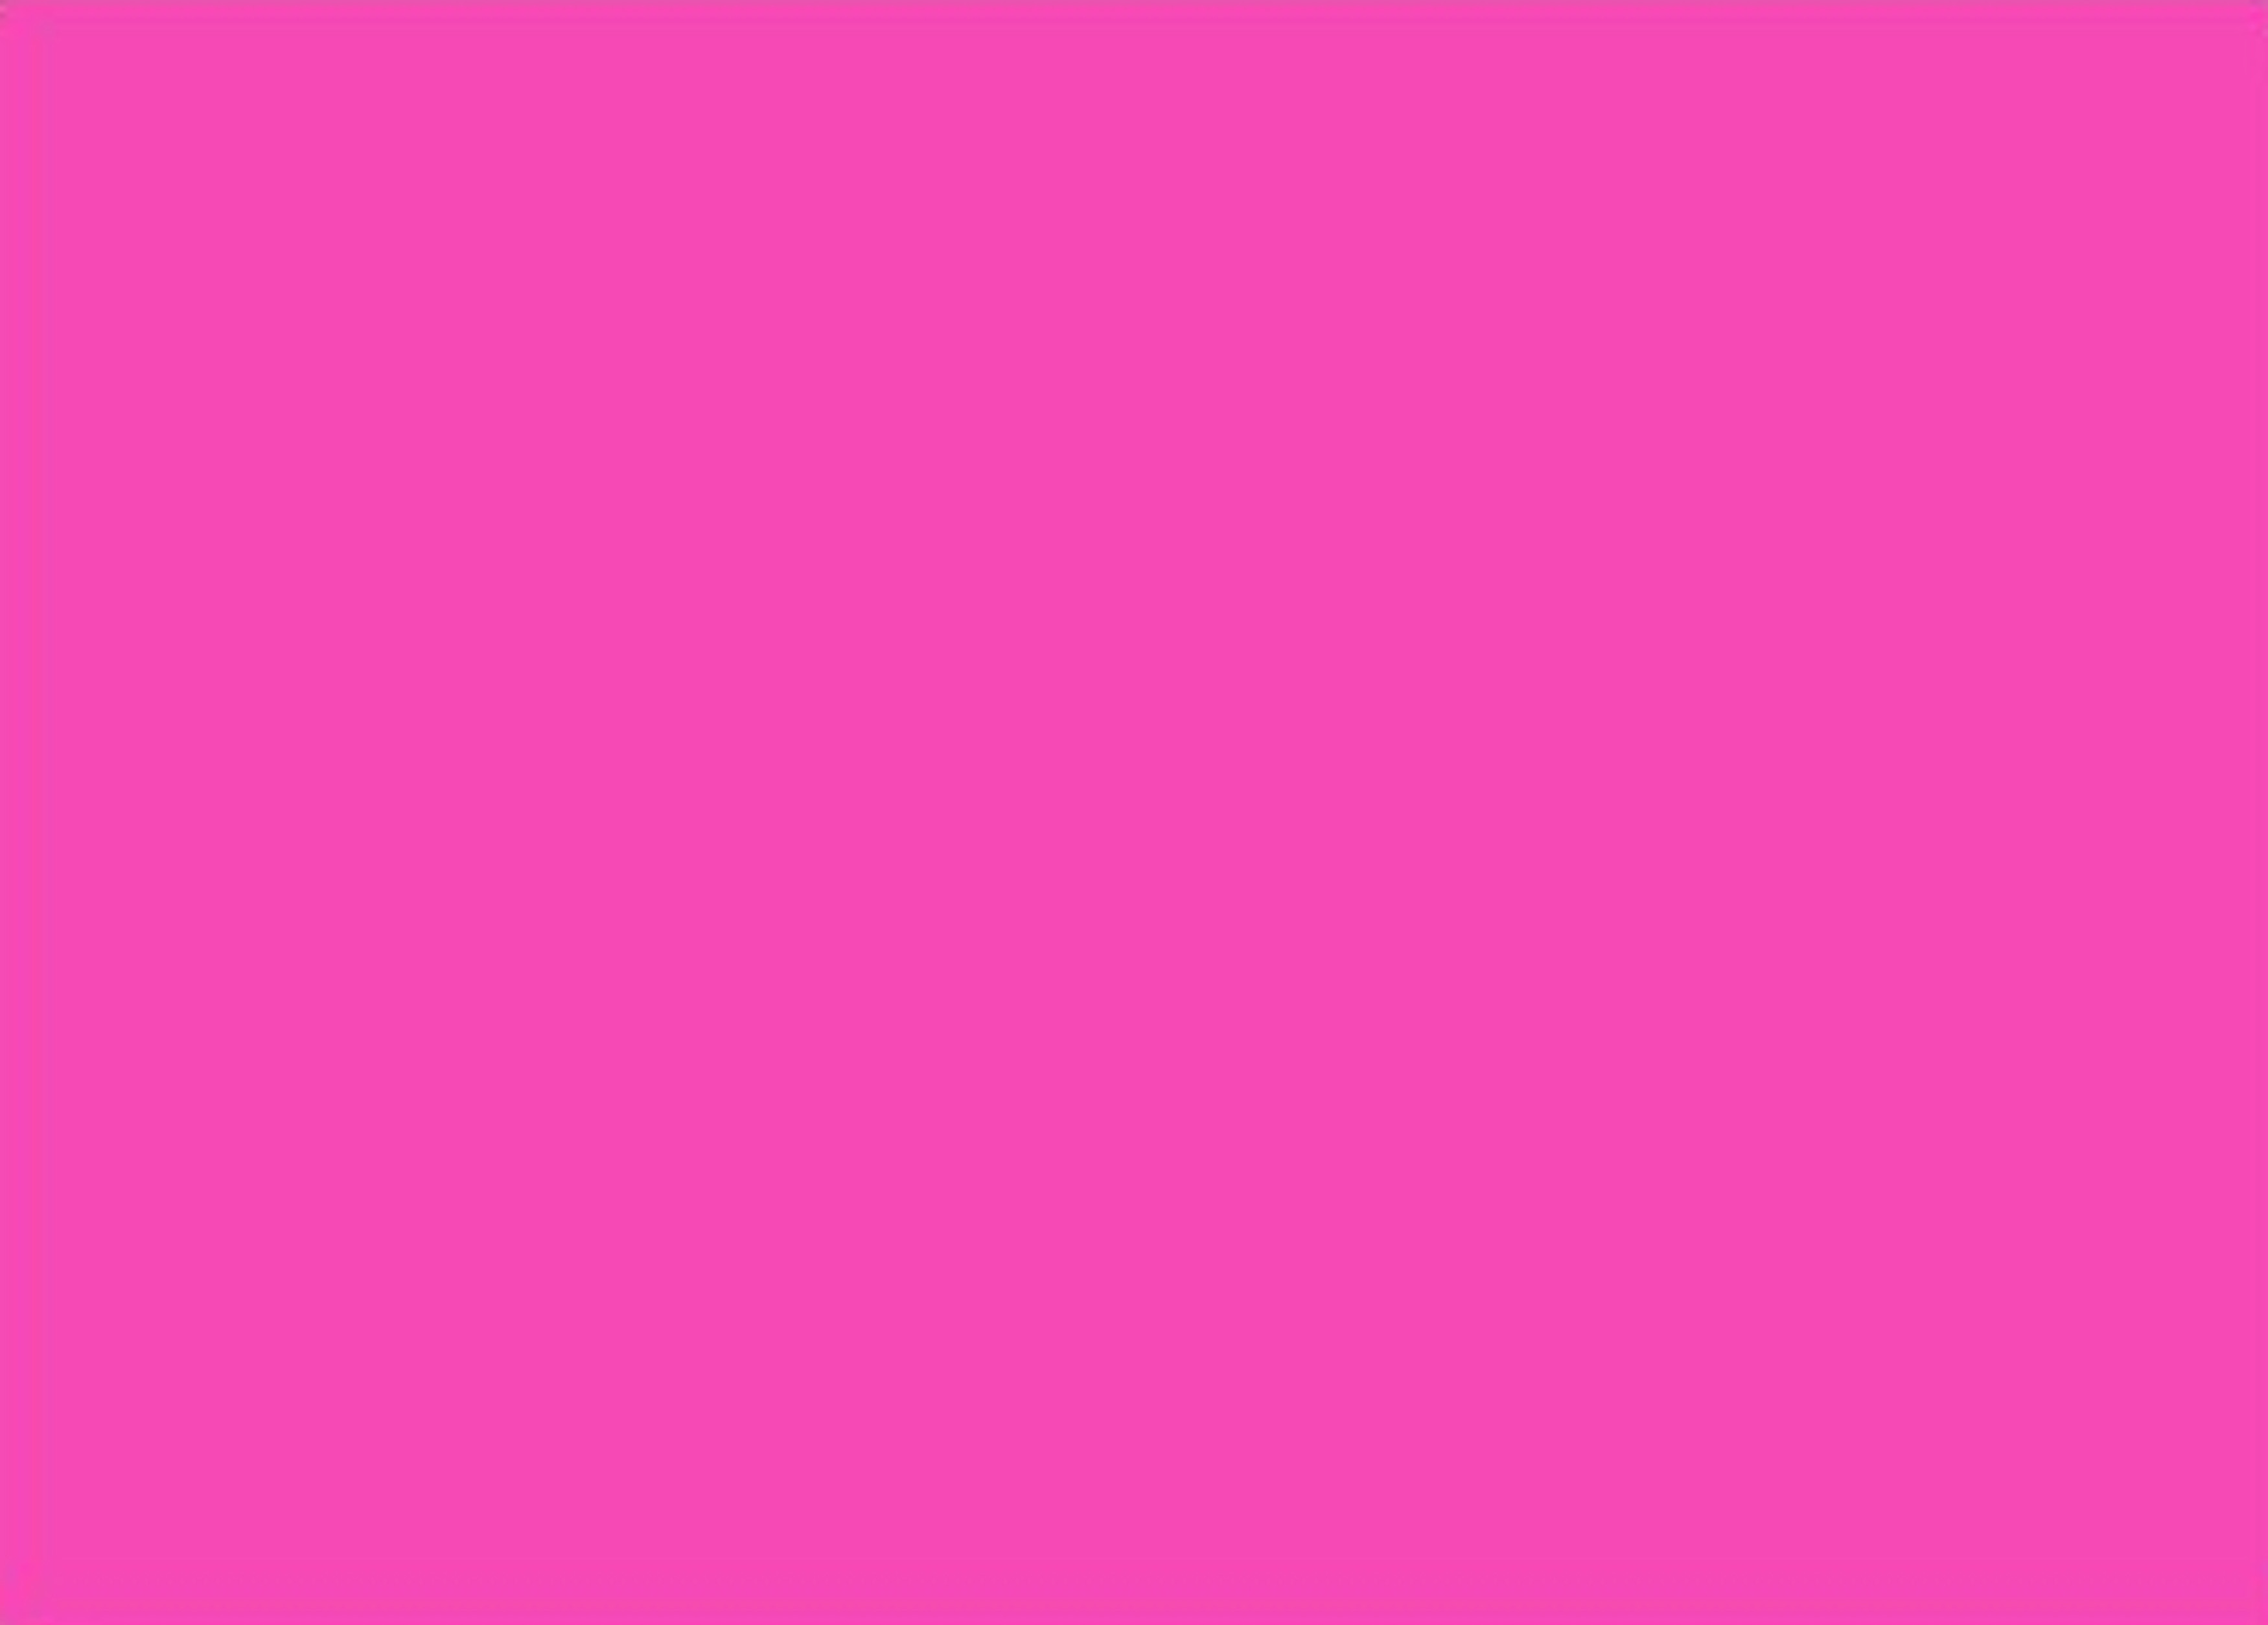 Bạn không muốn bỏ ra một khoản tiền lớn để tải về những hình nền màu hồng đơn sắc cho thiết bị của mình? Hãy truy cập vào trang web của chúng tôi để tải những mẫu hình nền đơn sắc màu hồng miễn phí và sử dụng thoải mái!